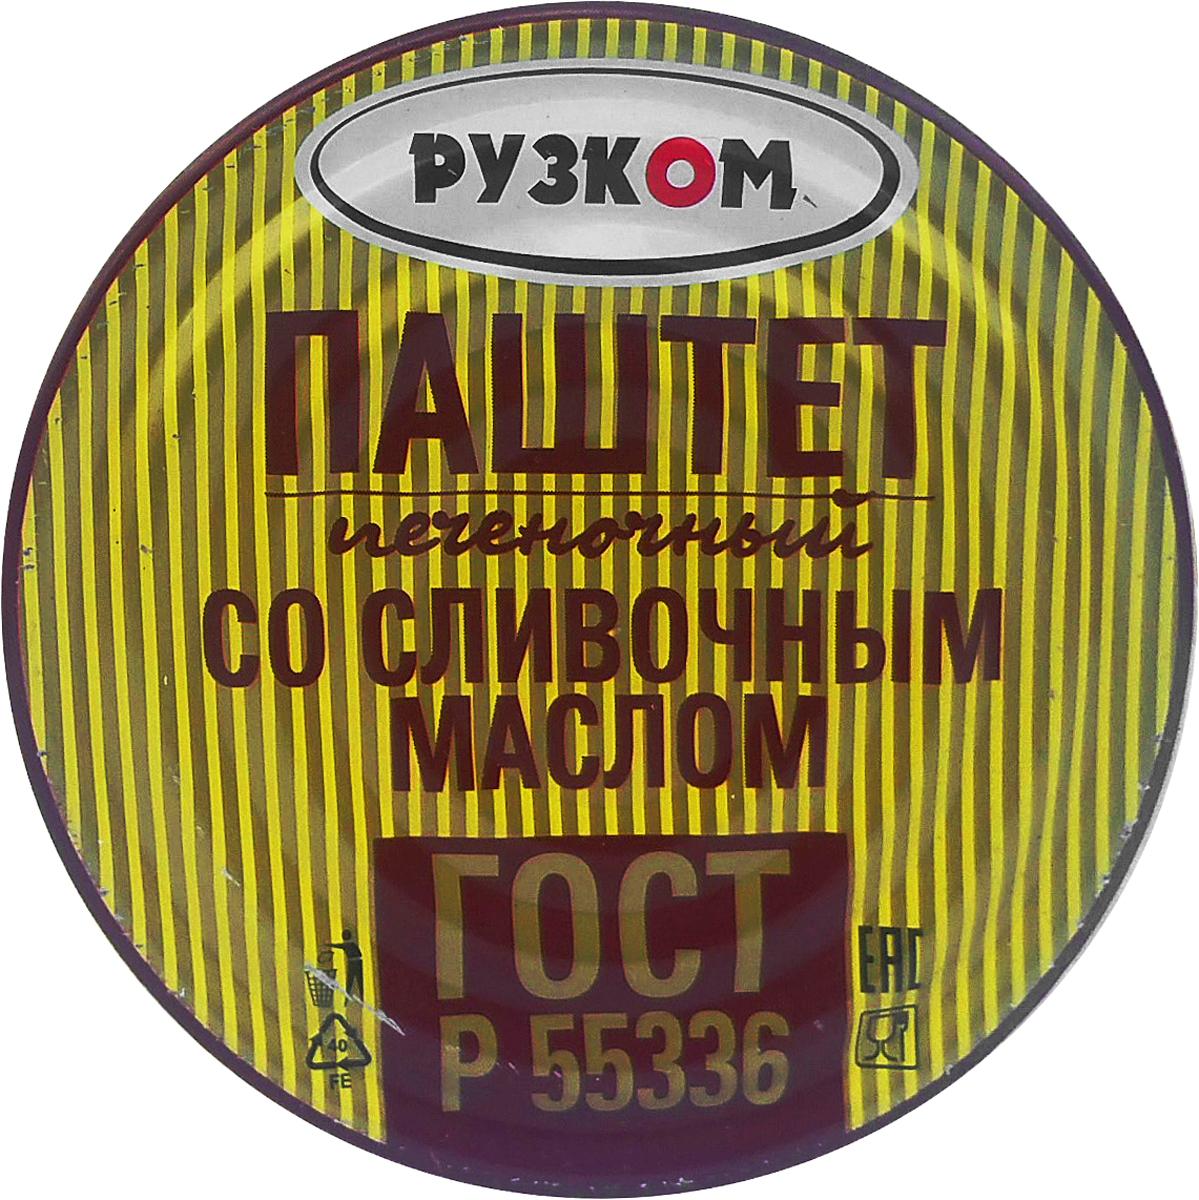 Паштет печеночный со сливочным маслом Рузком 117 гр., ж/б